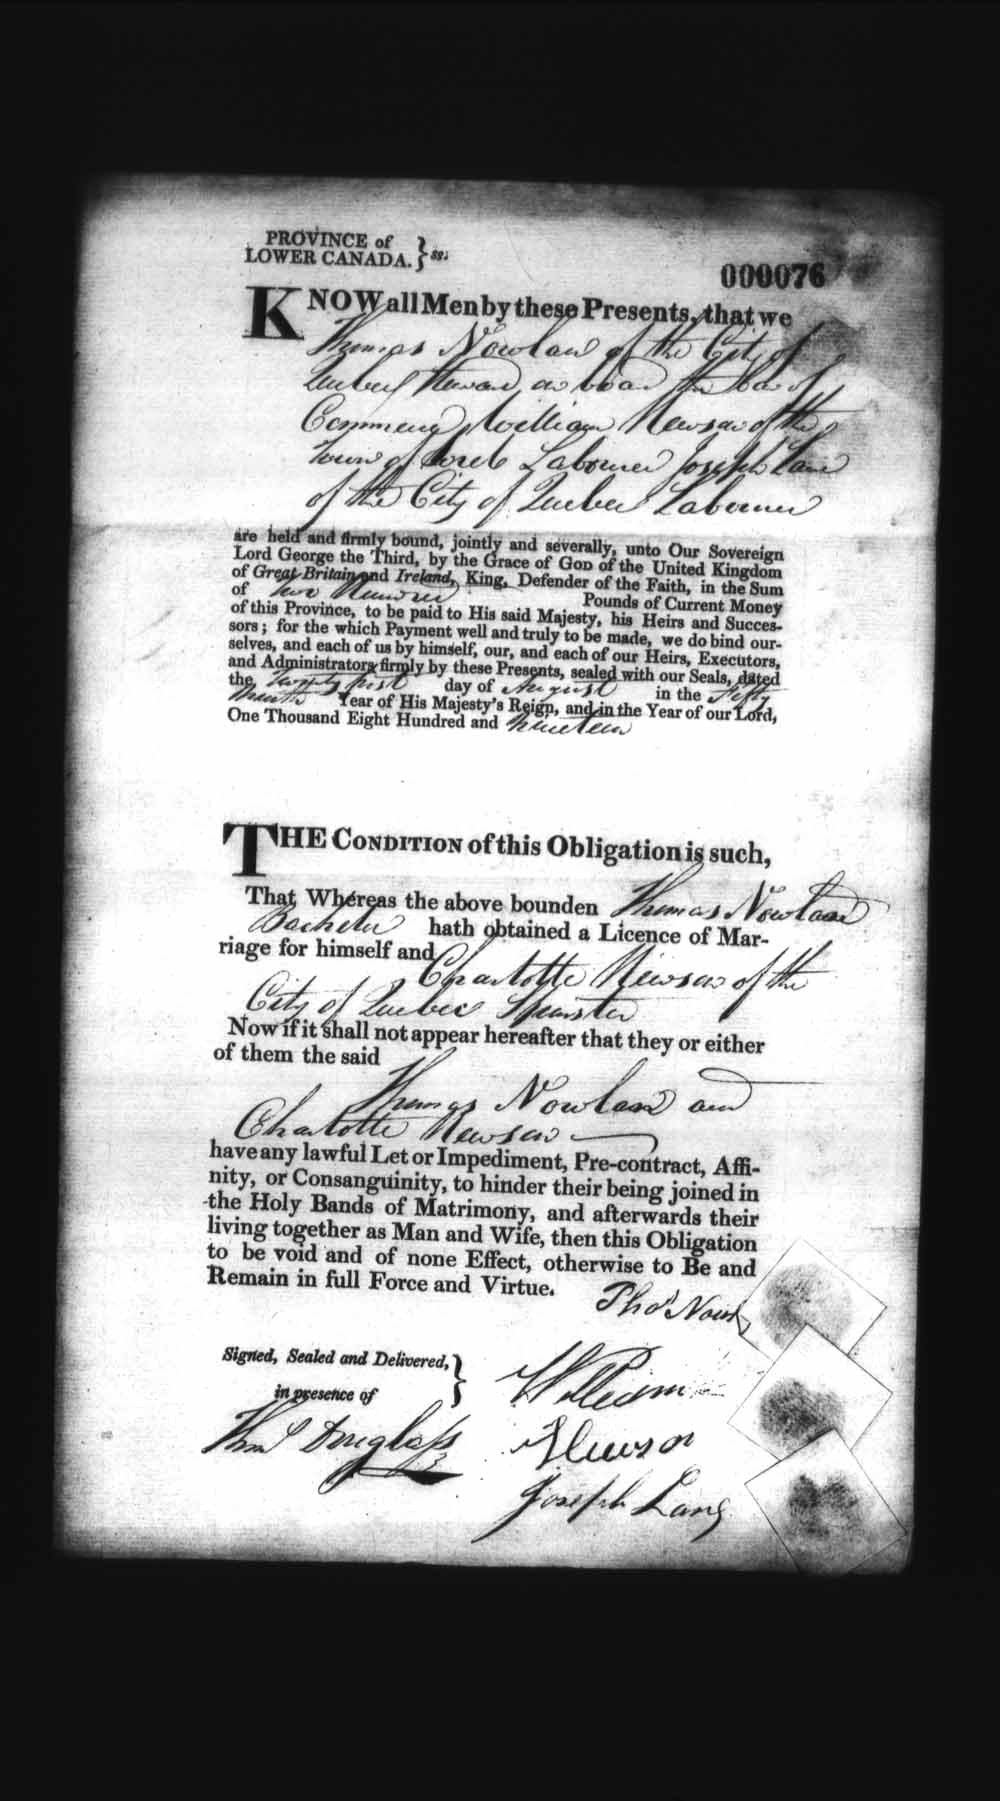 Page numérisé de Cautionnements de mariages pour le Haut-Canada et le Bas-Canada (1779-1865) pour l'image numéro: e008235900